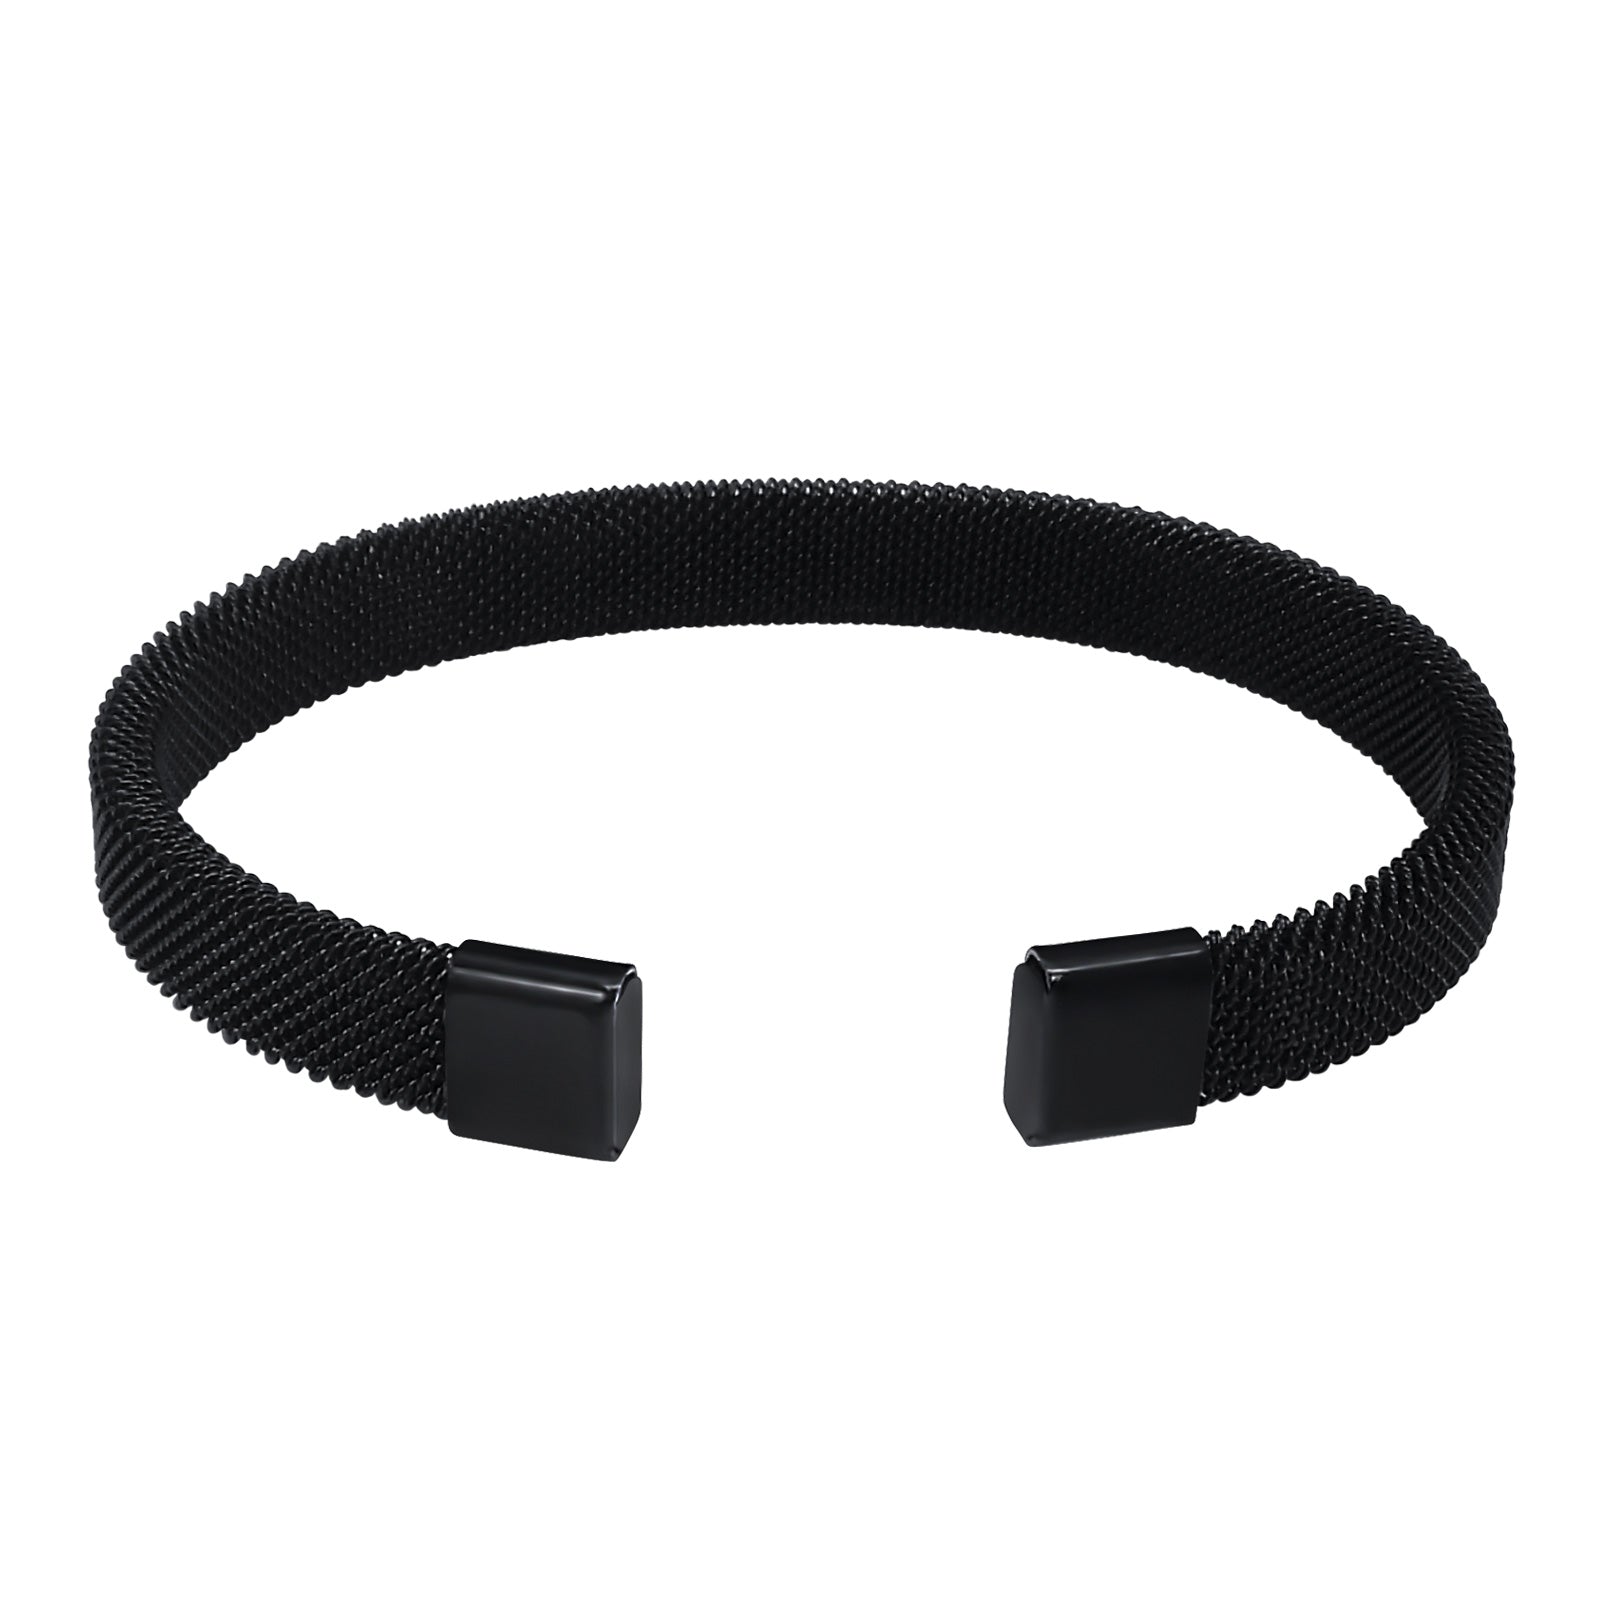 Black Stainless Steel Bangle Bracelet for Women